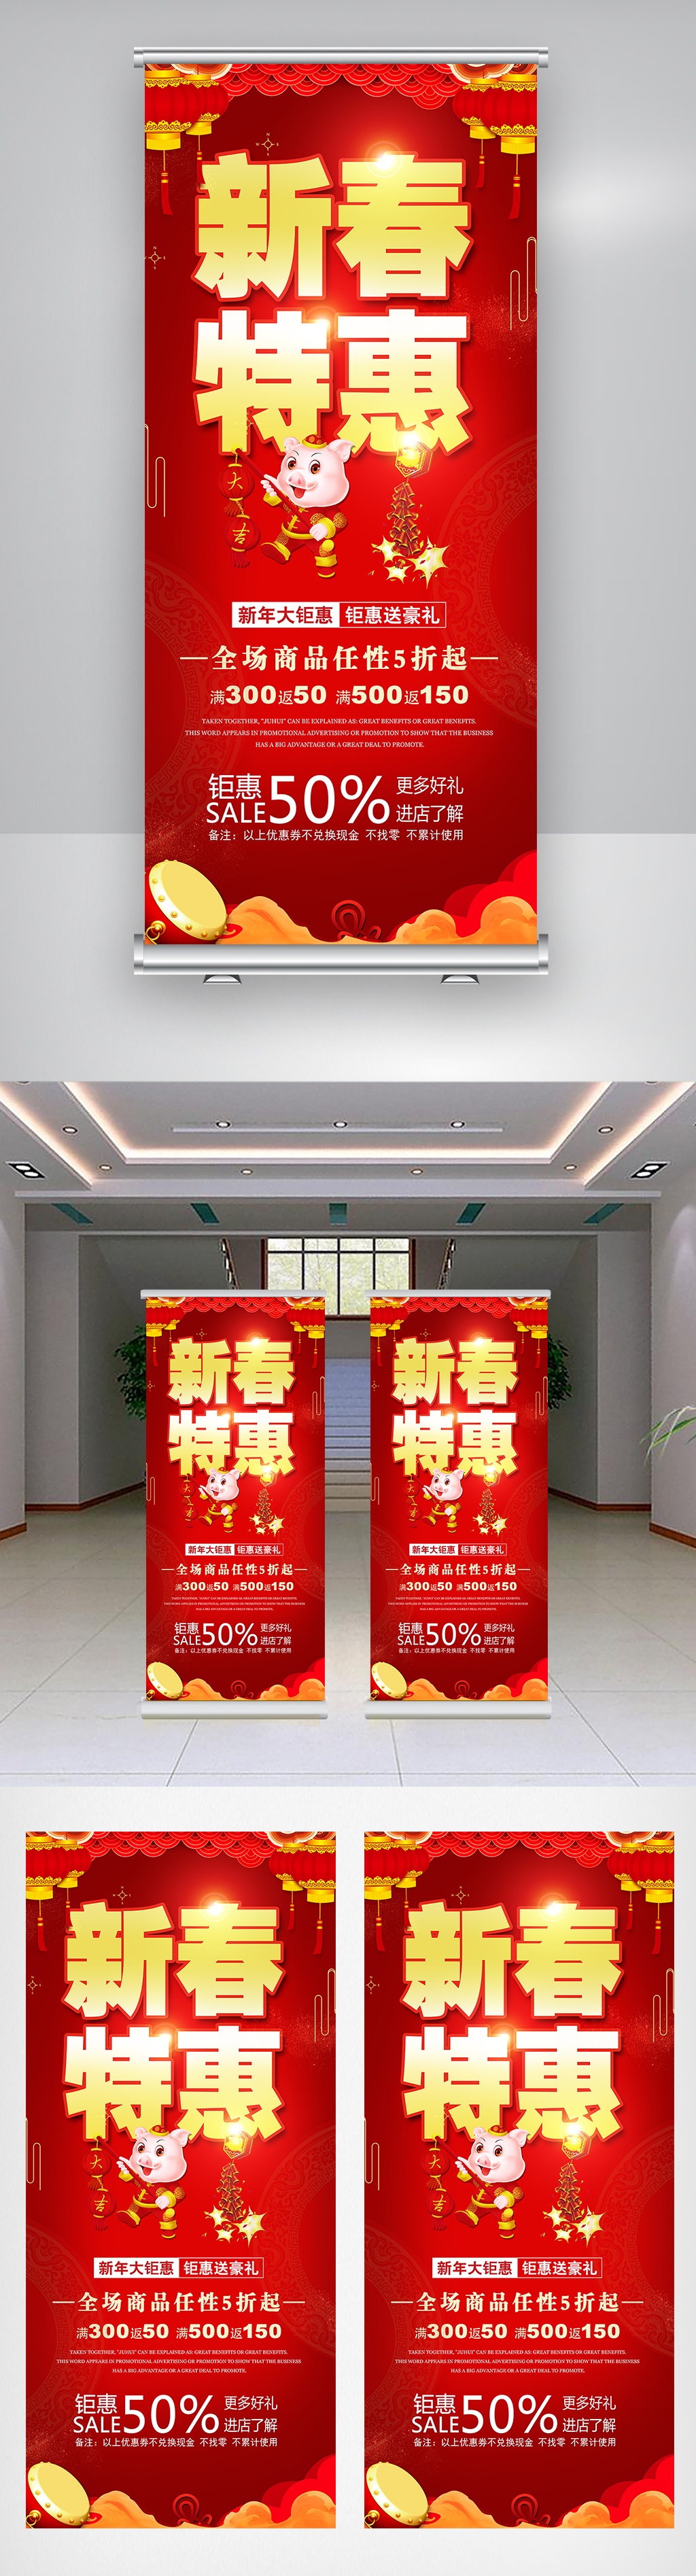 2019新春特惠宣传促销展架设计图片